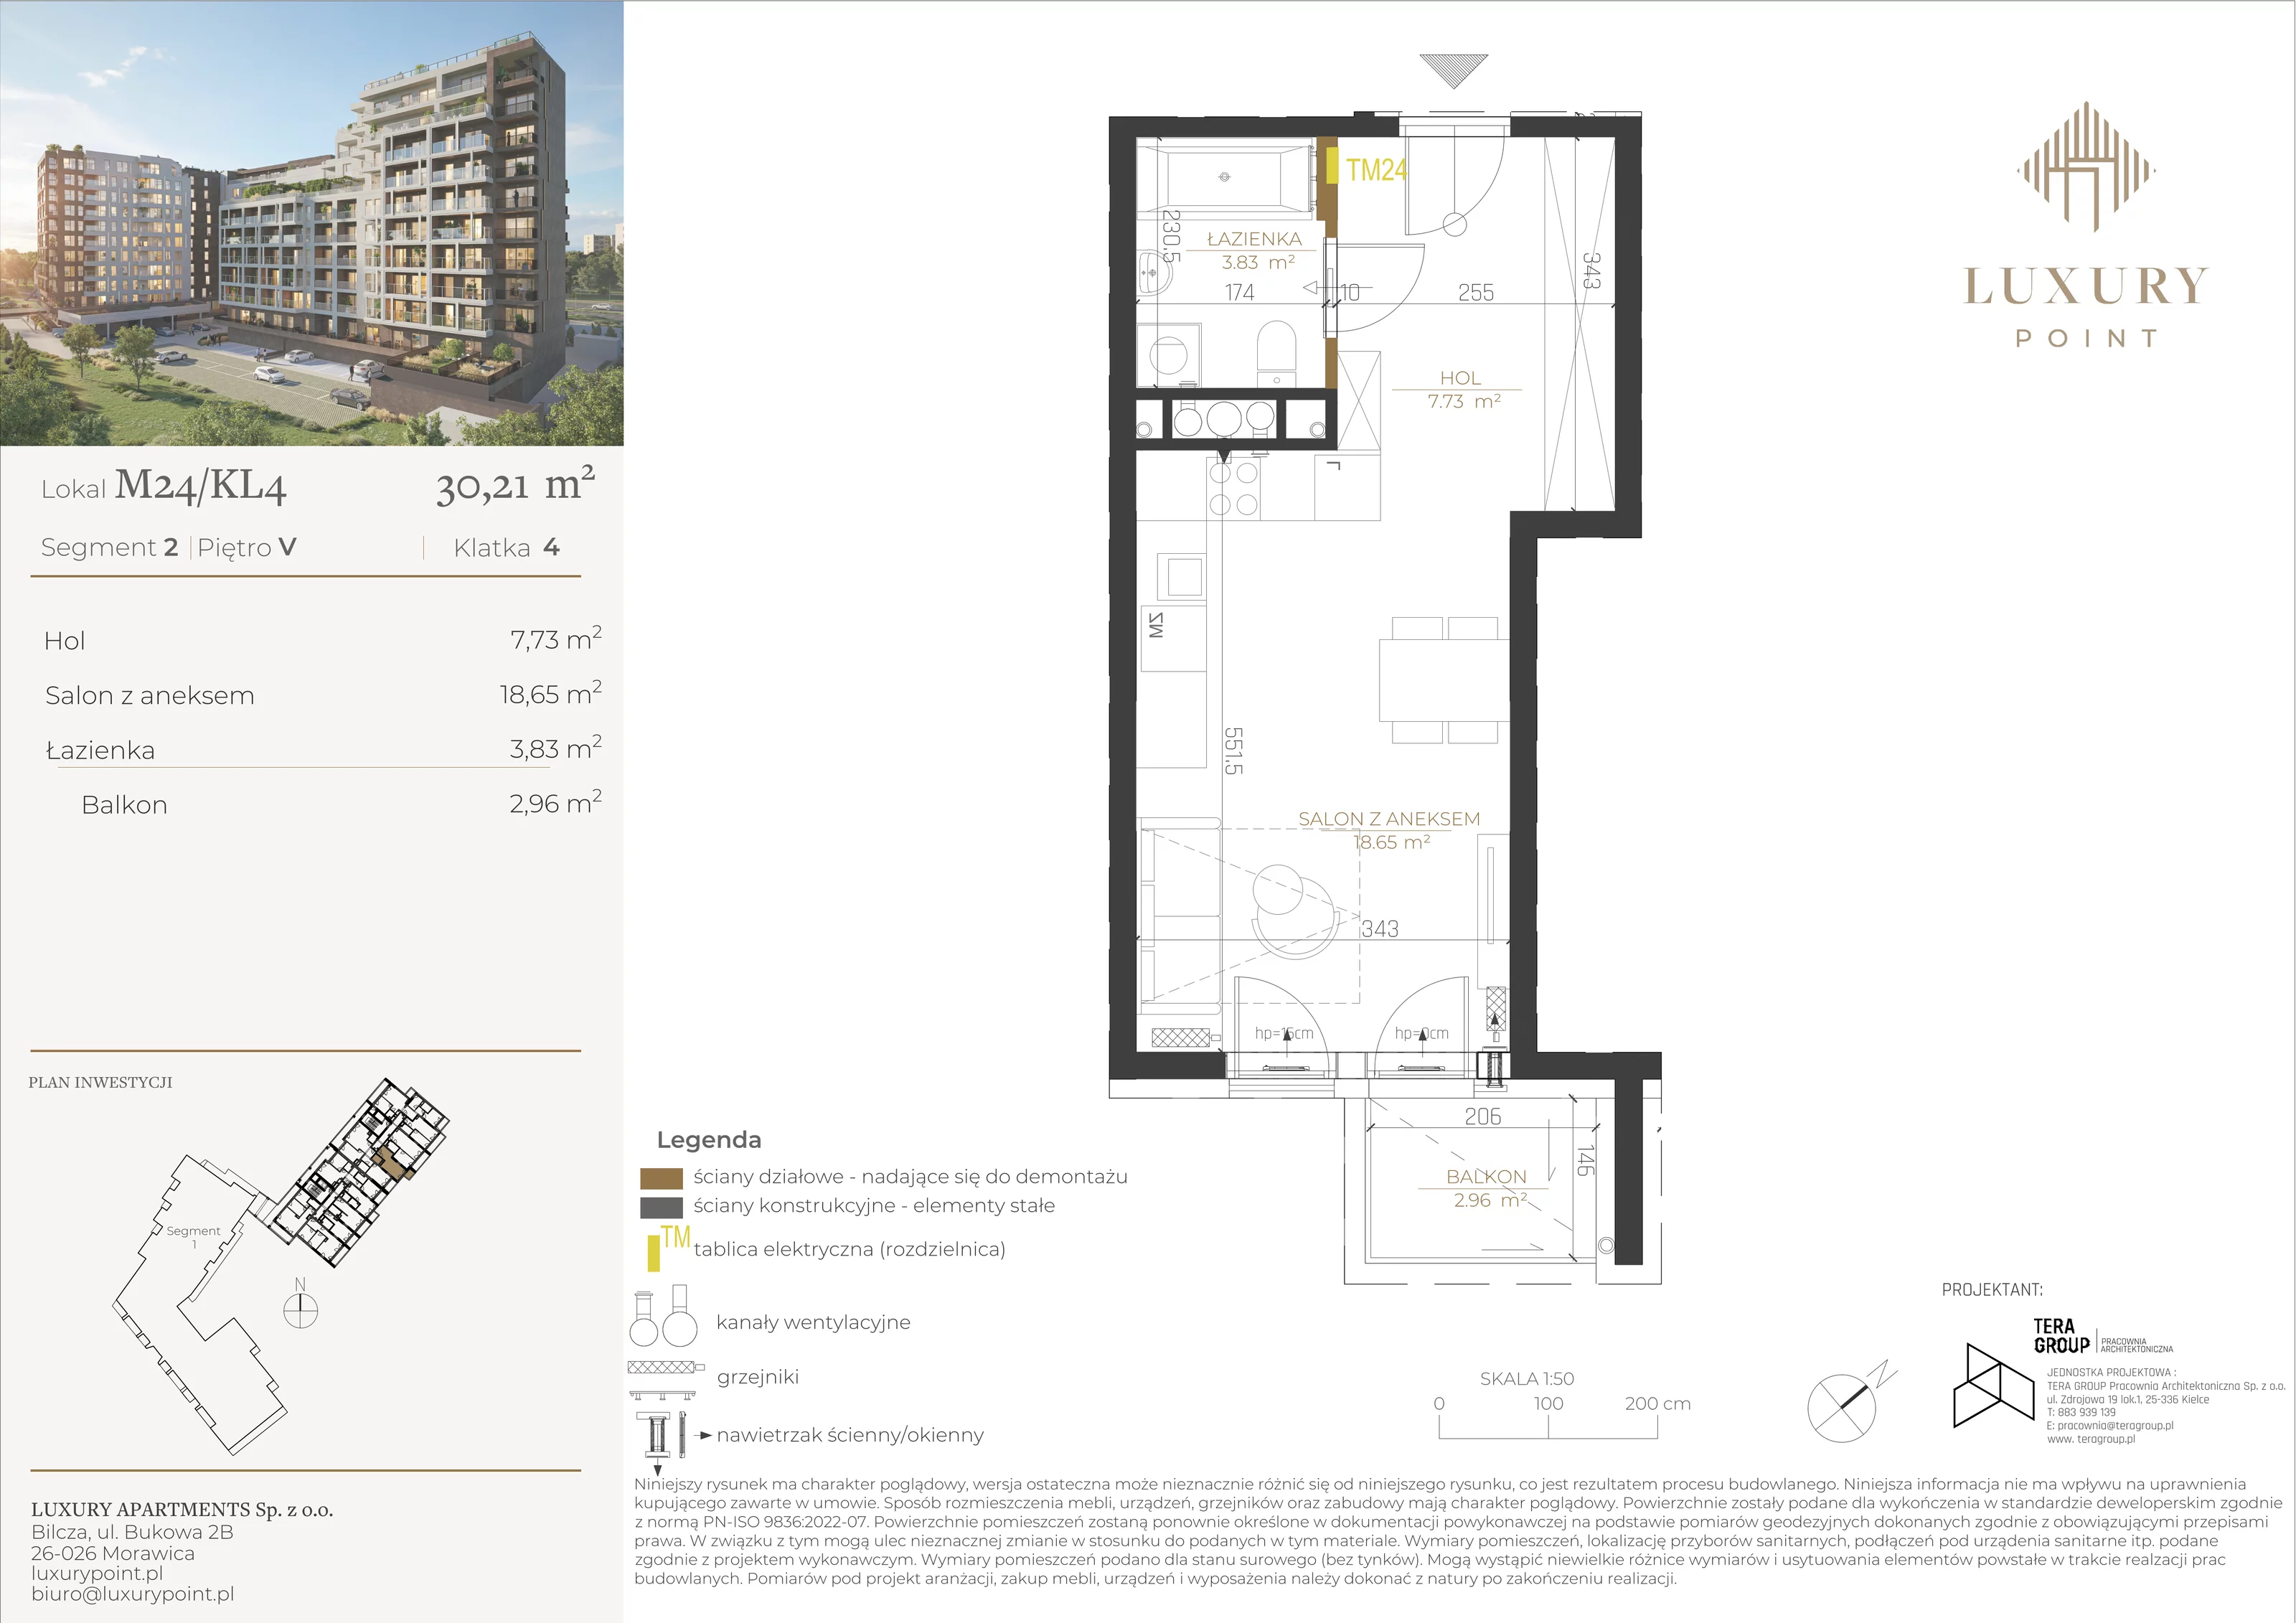 Mieszkanie 30,21 m², piętro 5, oferta nr M24/KL4, Luxury Point, Kielce, Al. Solidarności